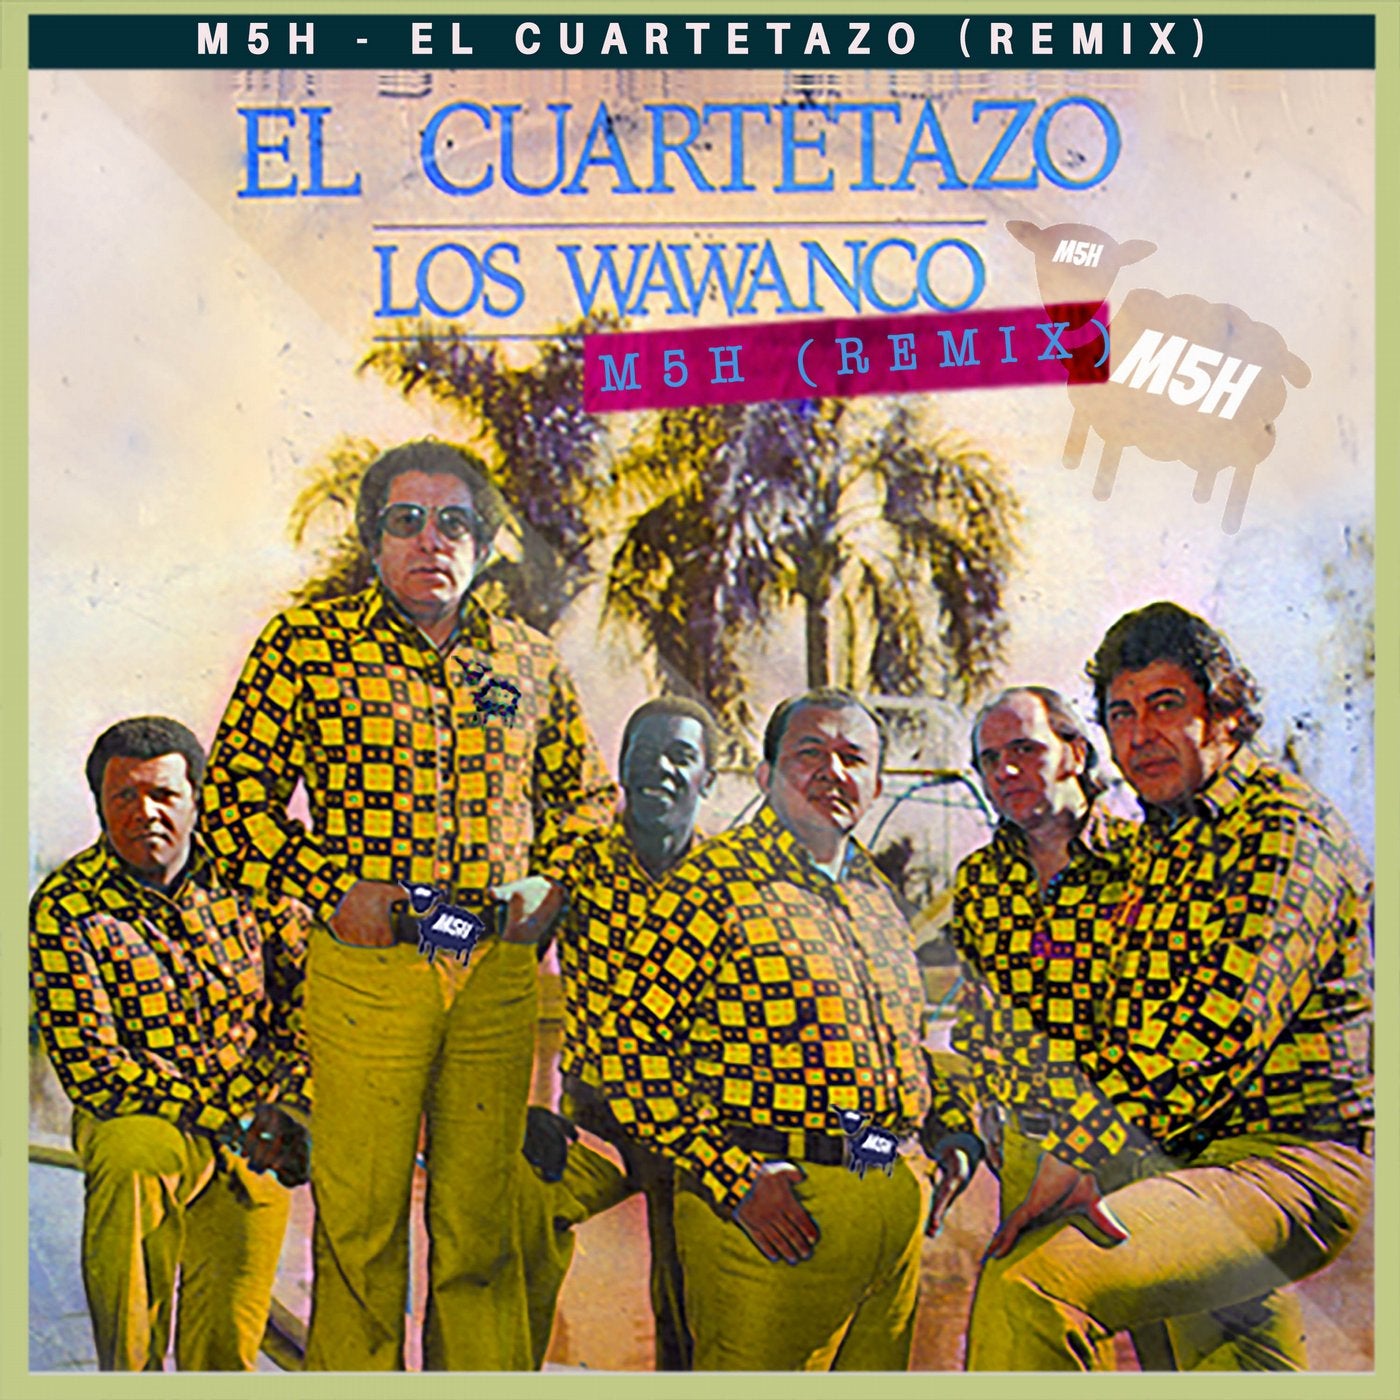 Los Wawanco - El Cuartetazo (M5H Remix)